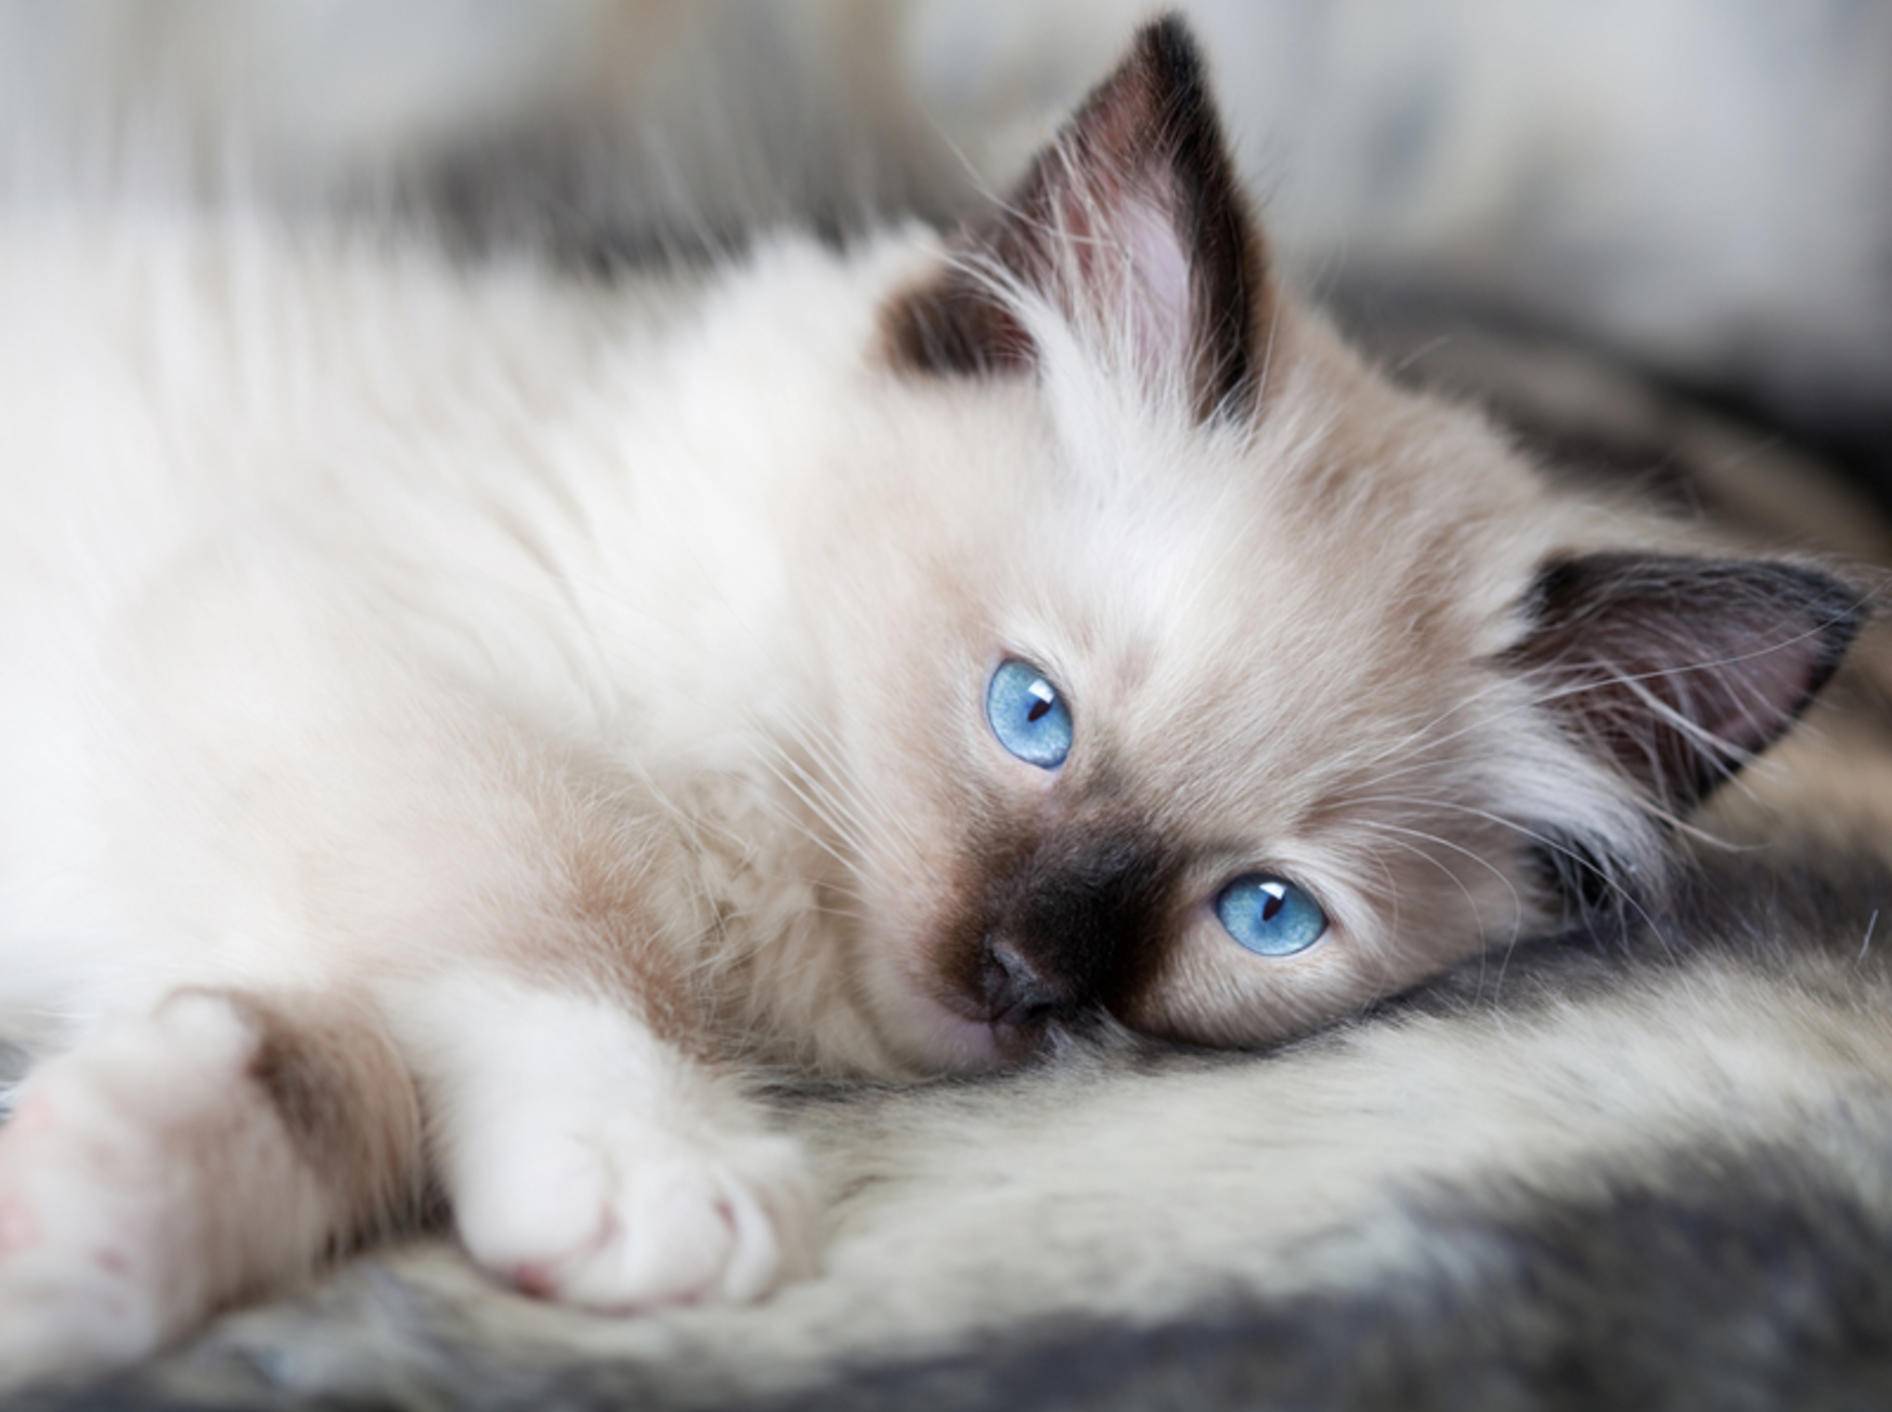 Ragdoll-Katzenbabys fallen besonders durch ihre strahlend blauen Augen auf – Bild: Shutterstock / Anneka